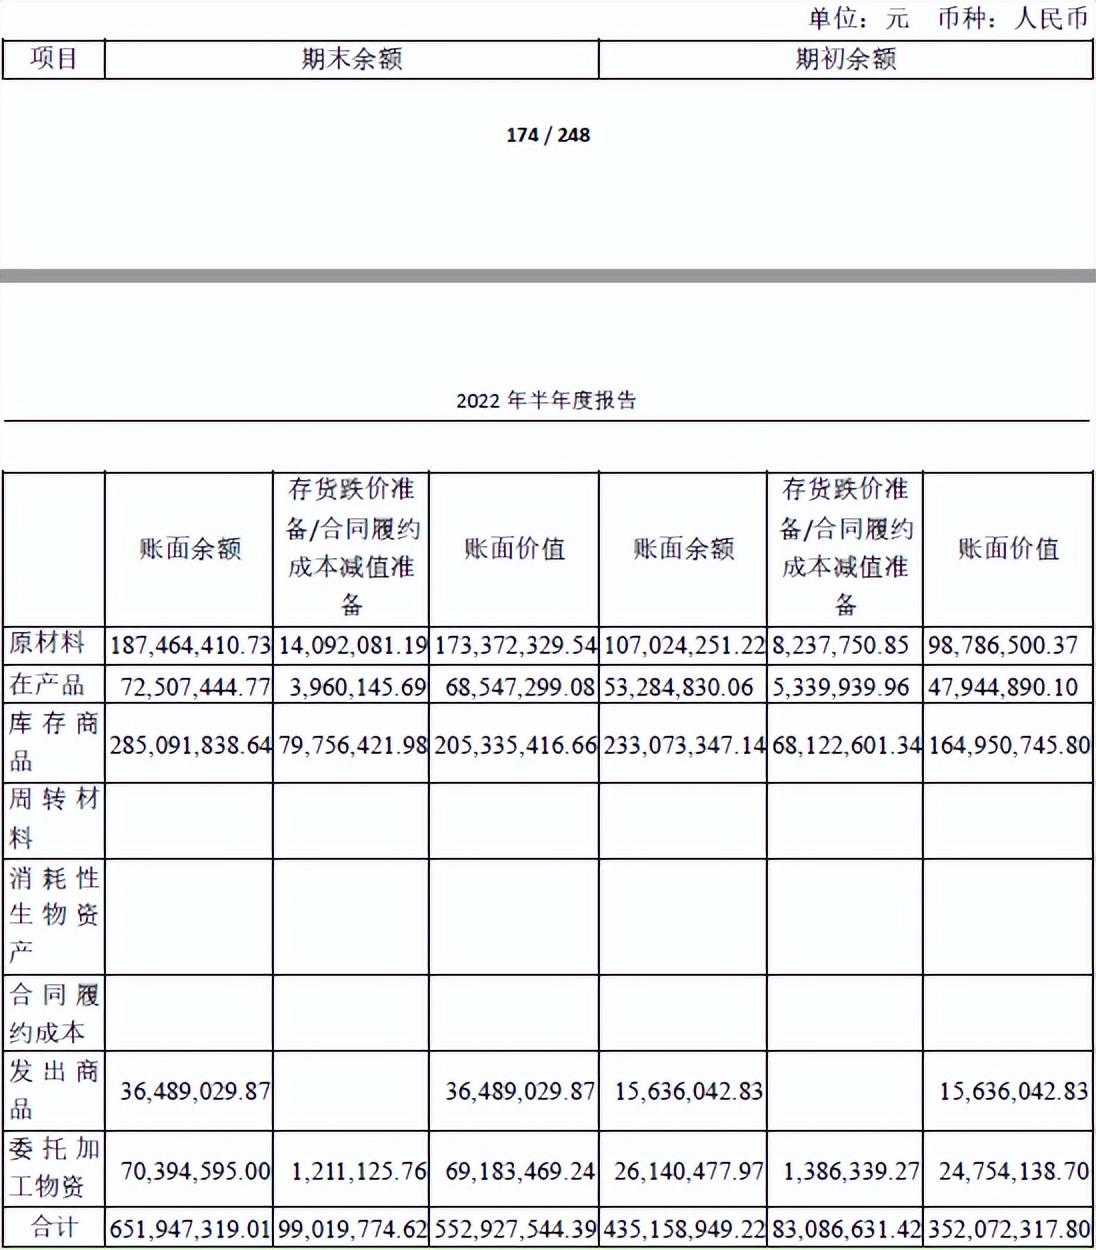 皓元医药披露2022年三季度报告 实现营收9.7亿元